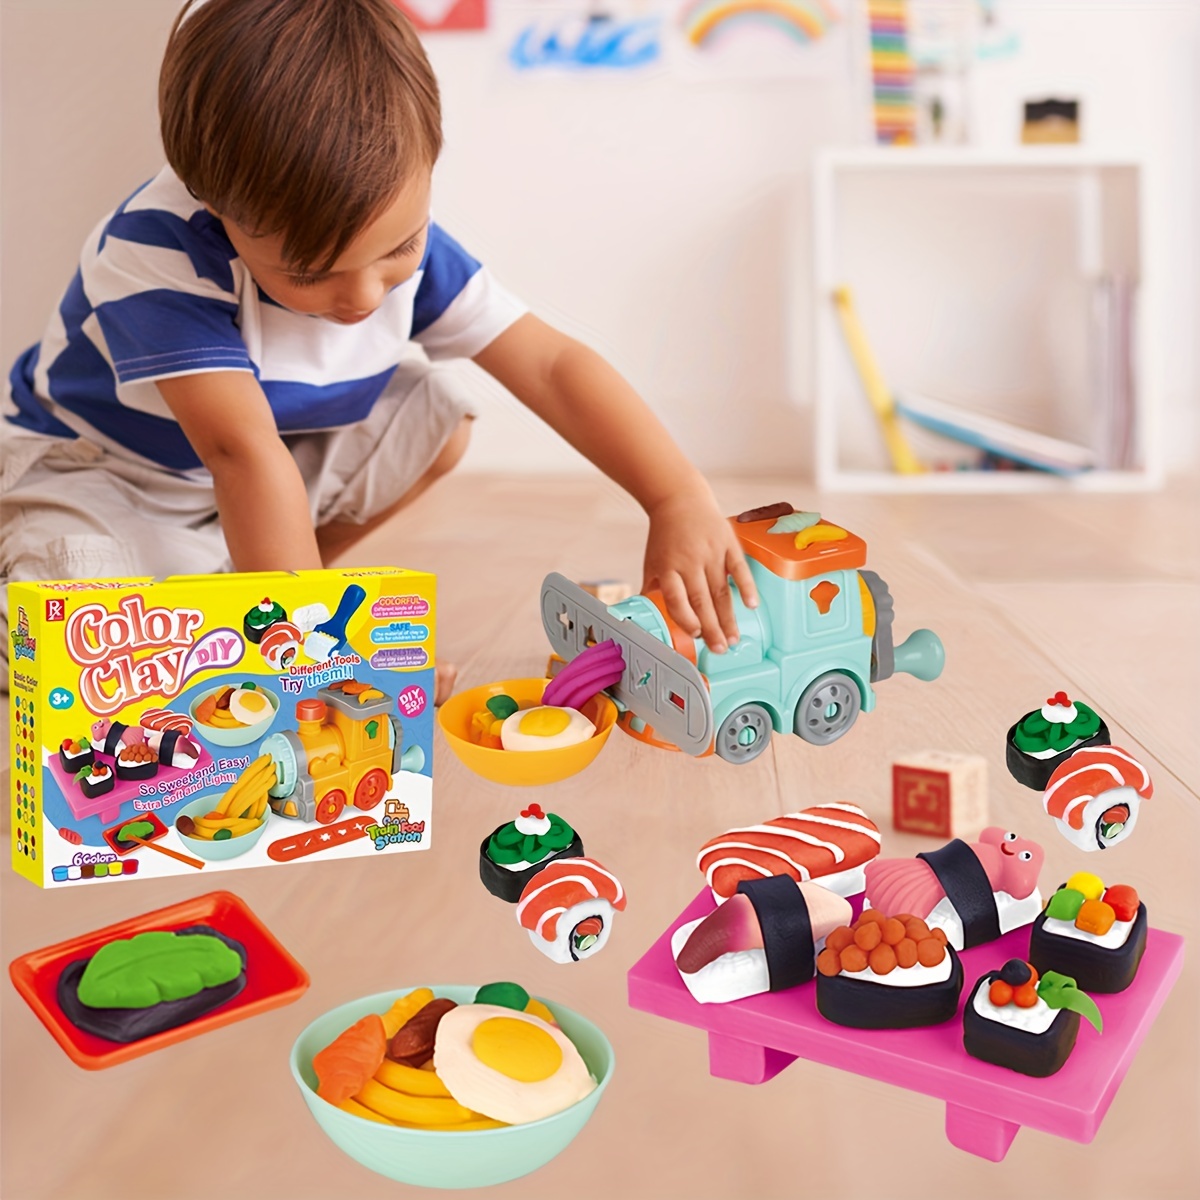 Juego de cocina de juguete para niños de 3 a 8 años, juego de plastilina,  herramientas de plastilina, juego de comida de cocina simulada con accesorio